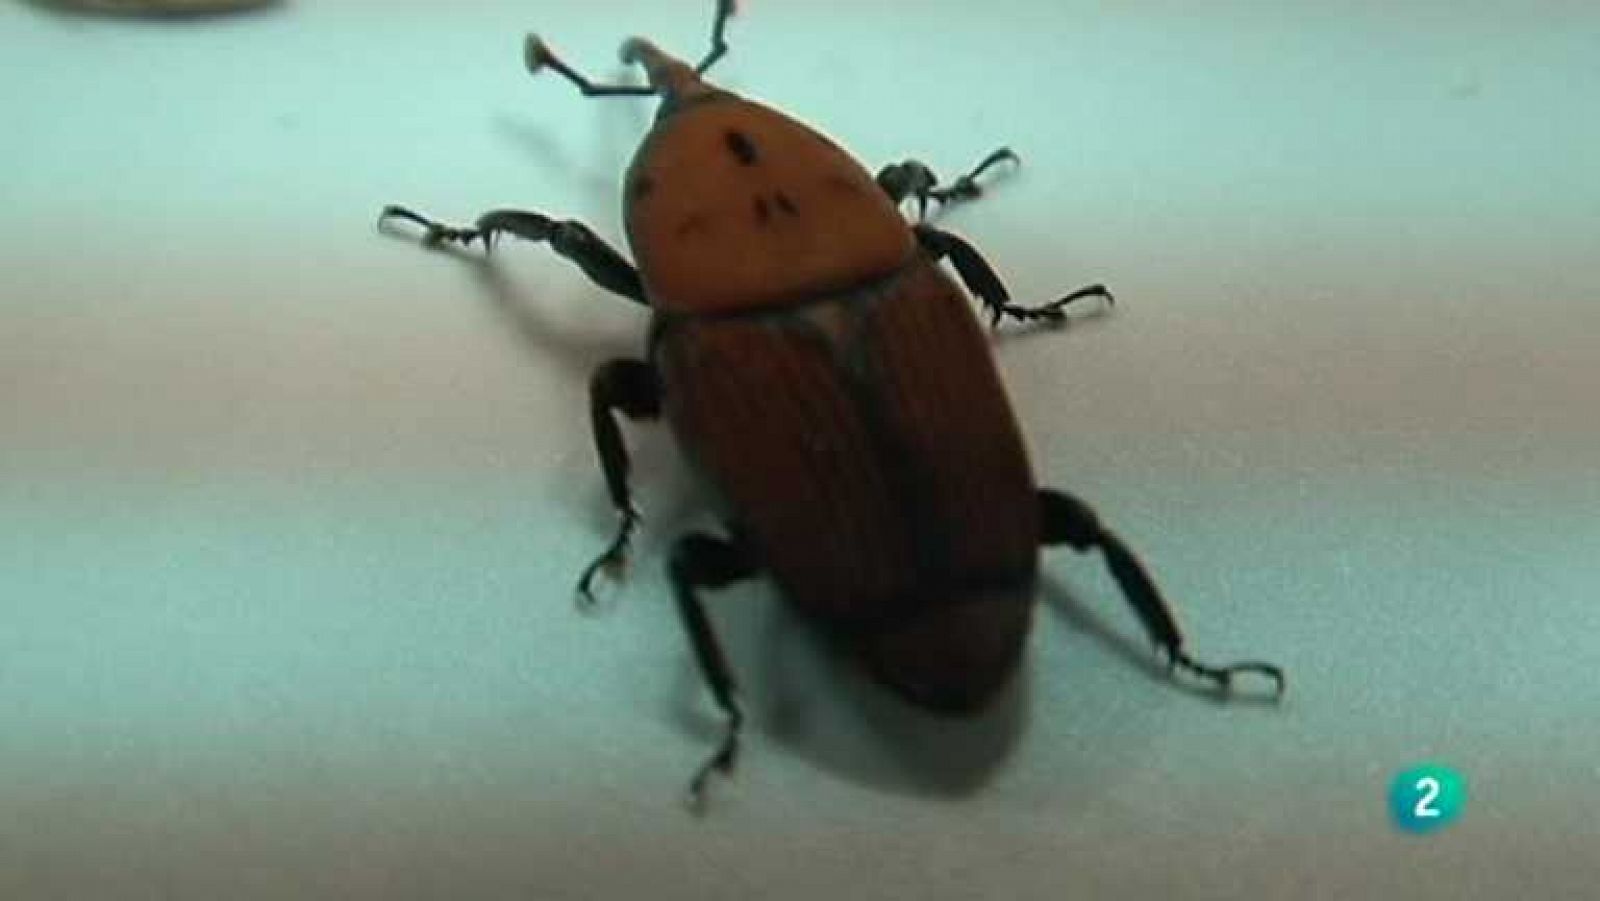 El escarabajo verde - Escarabajo de destrucción masiva - Ver ahora